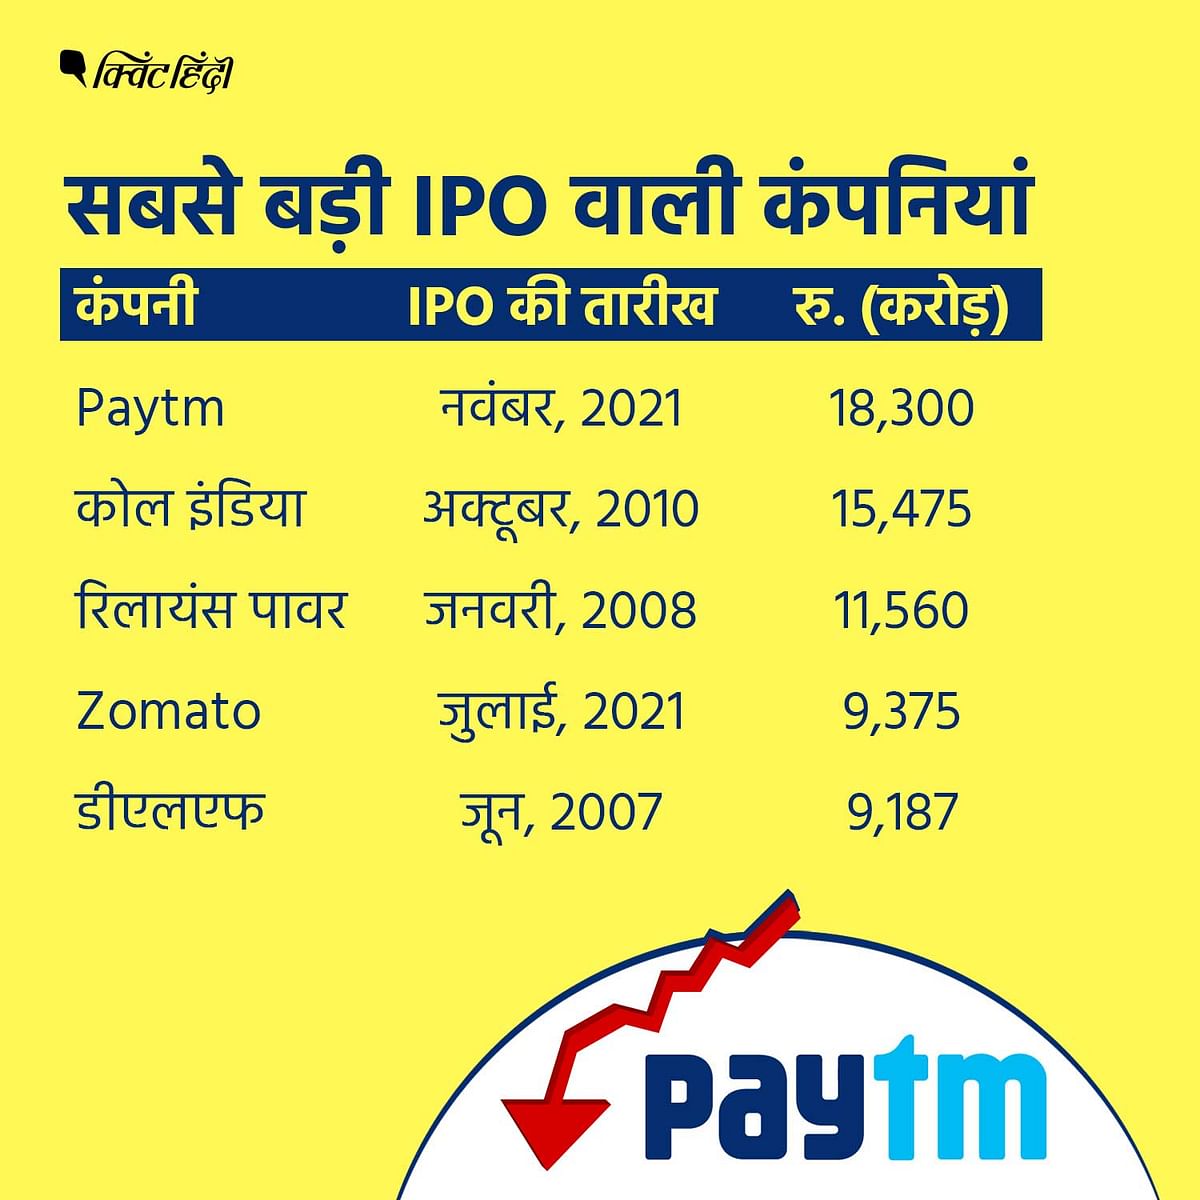 Paytm का शेयर 2,150 रुपए से गिरकर 589 रुपए पर आ गया है.